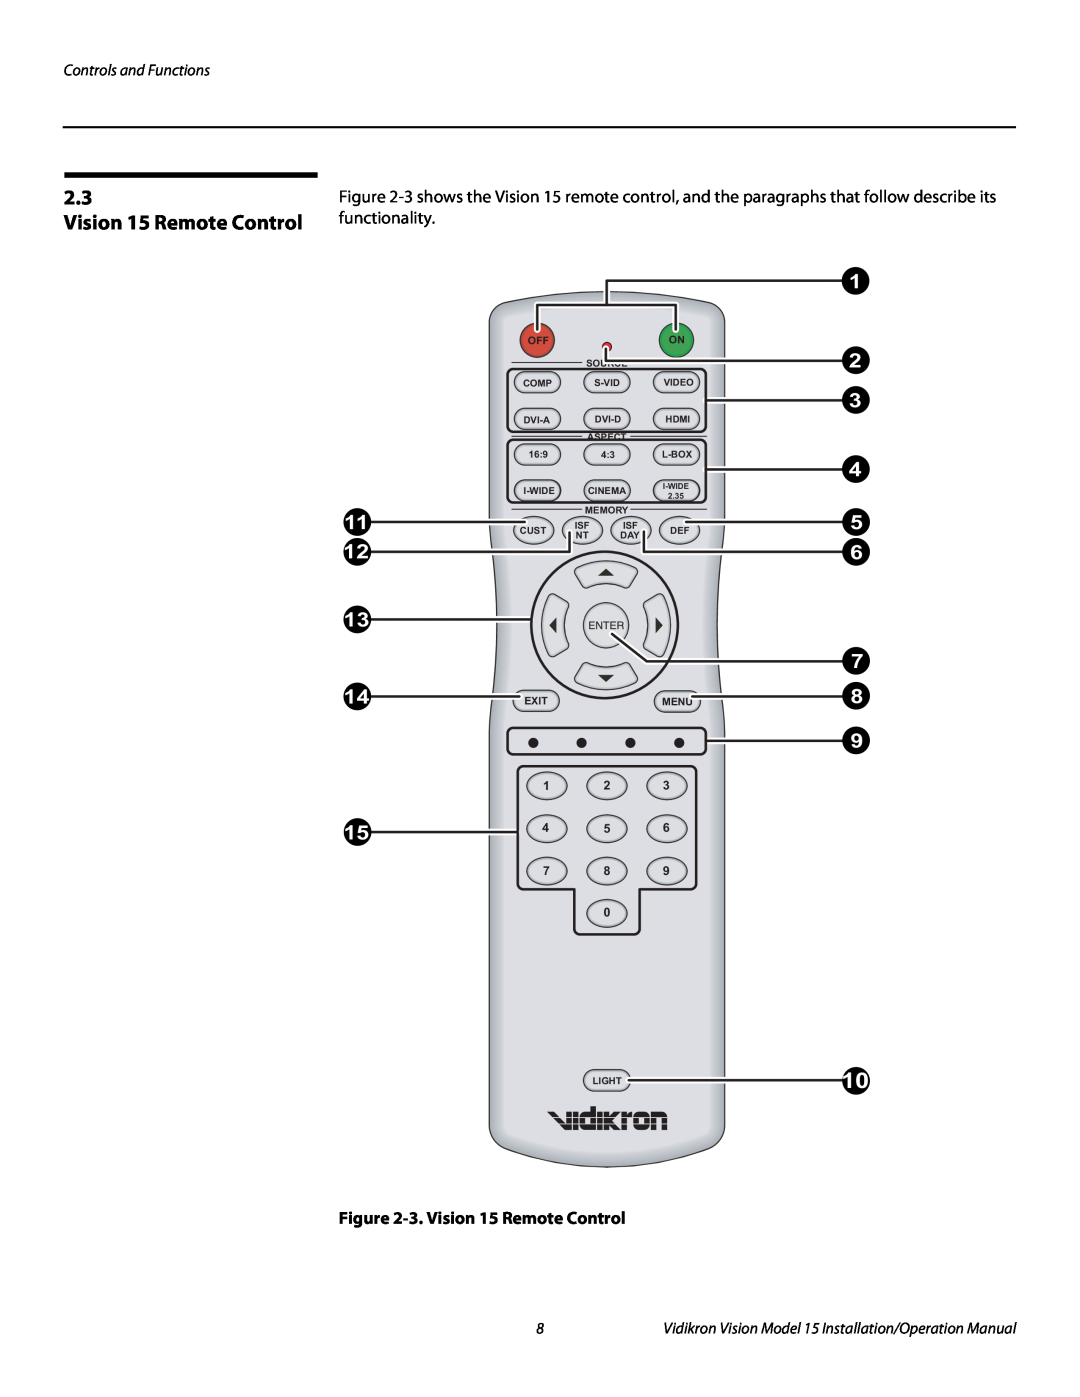 Vidikron Vision 15ET 3. Vision 15 Remote Control, Controls and Functions, 1 2 15 4 5 7 8, Exit, Menu, Source, Comp 